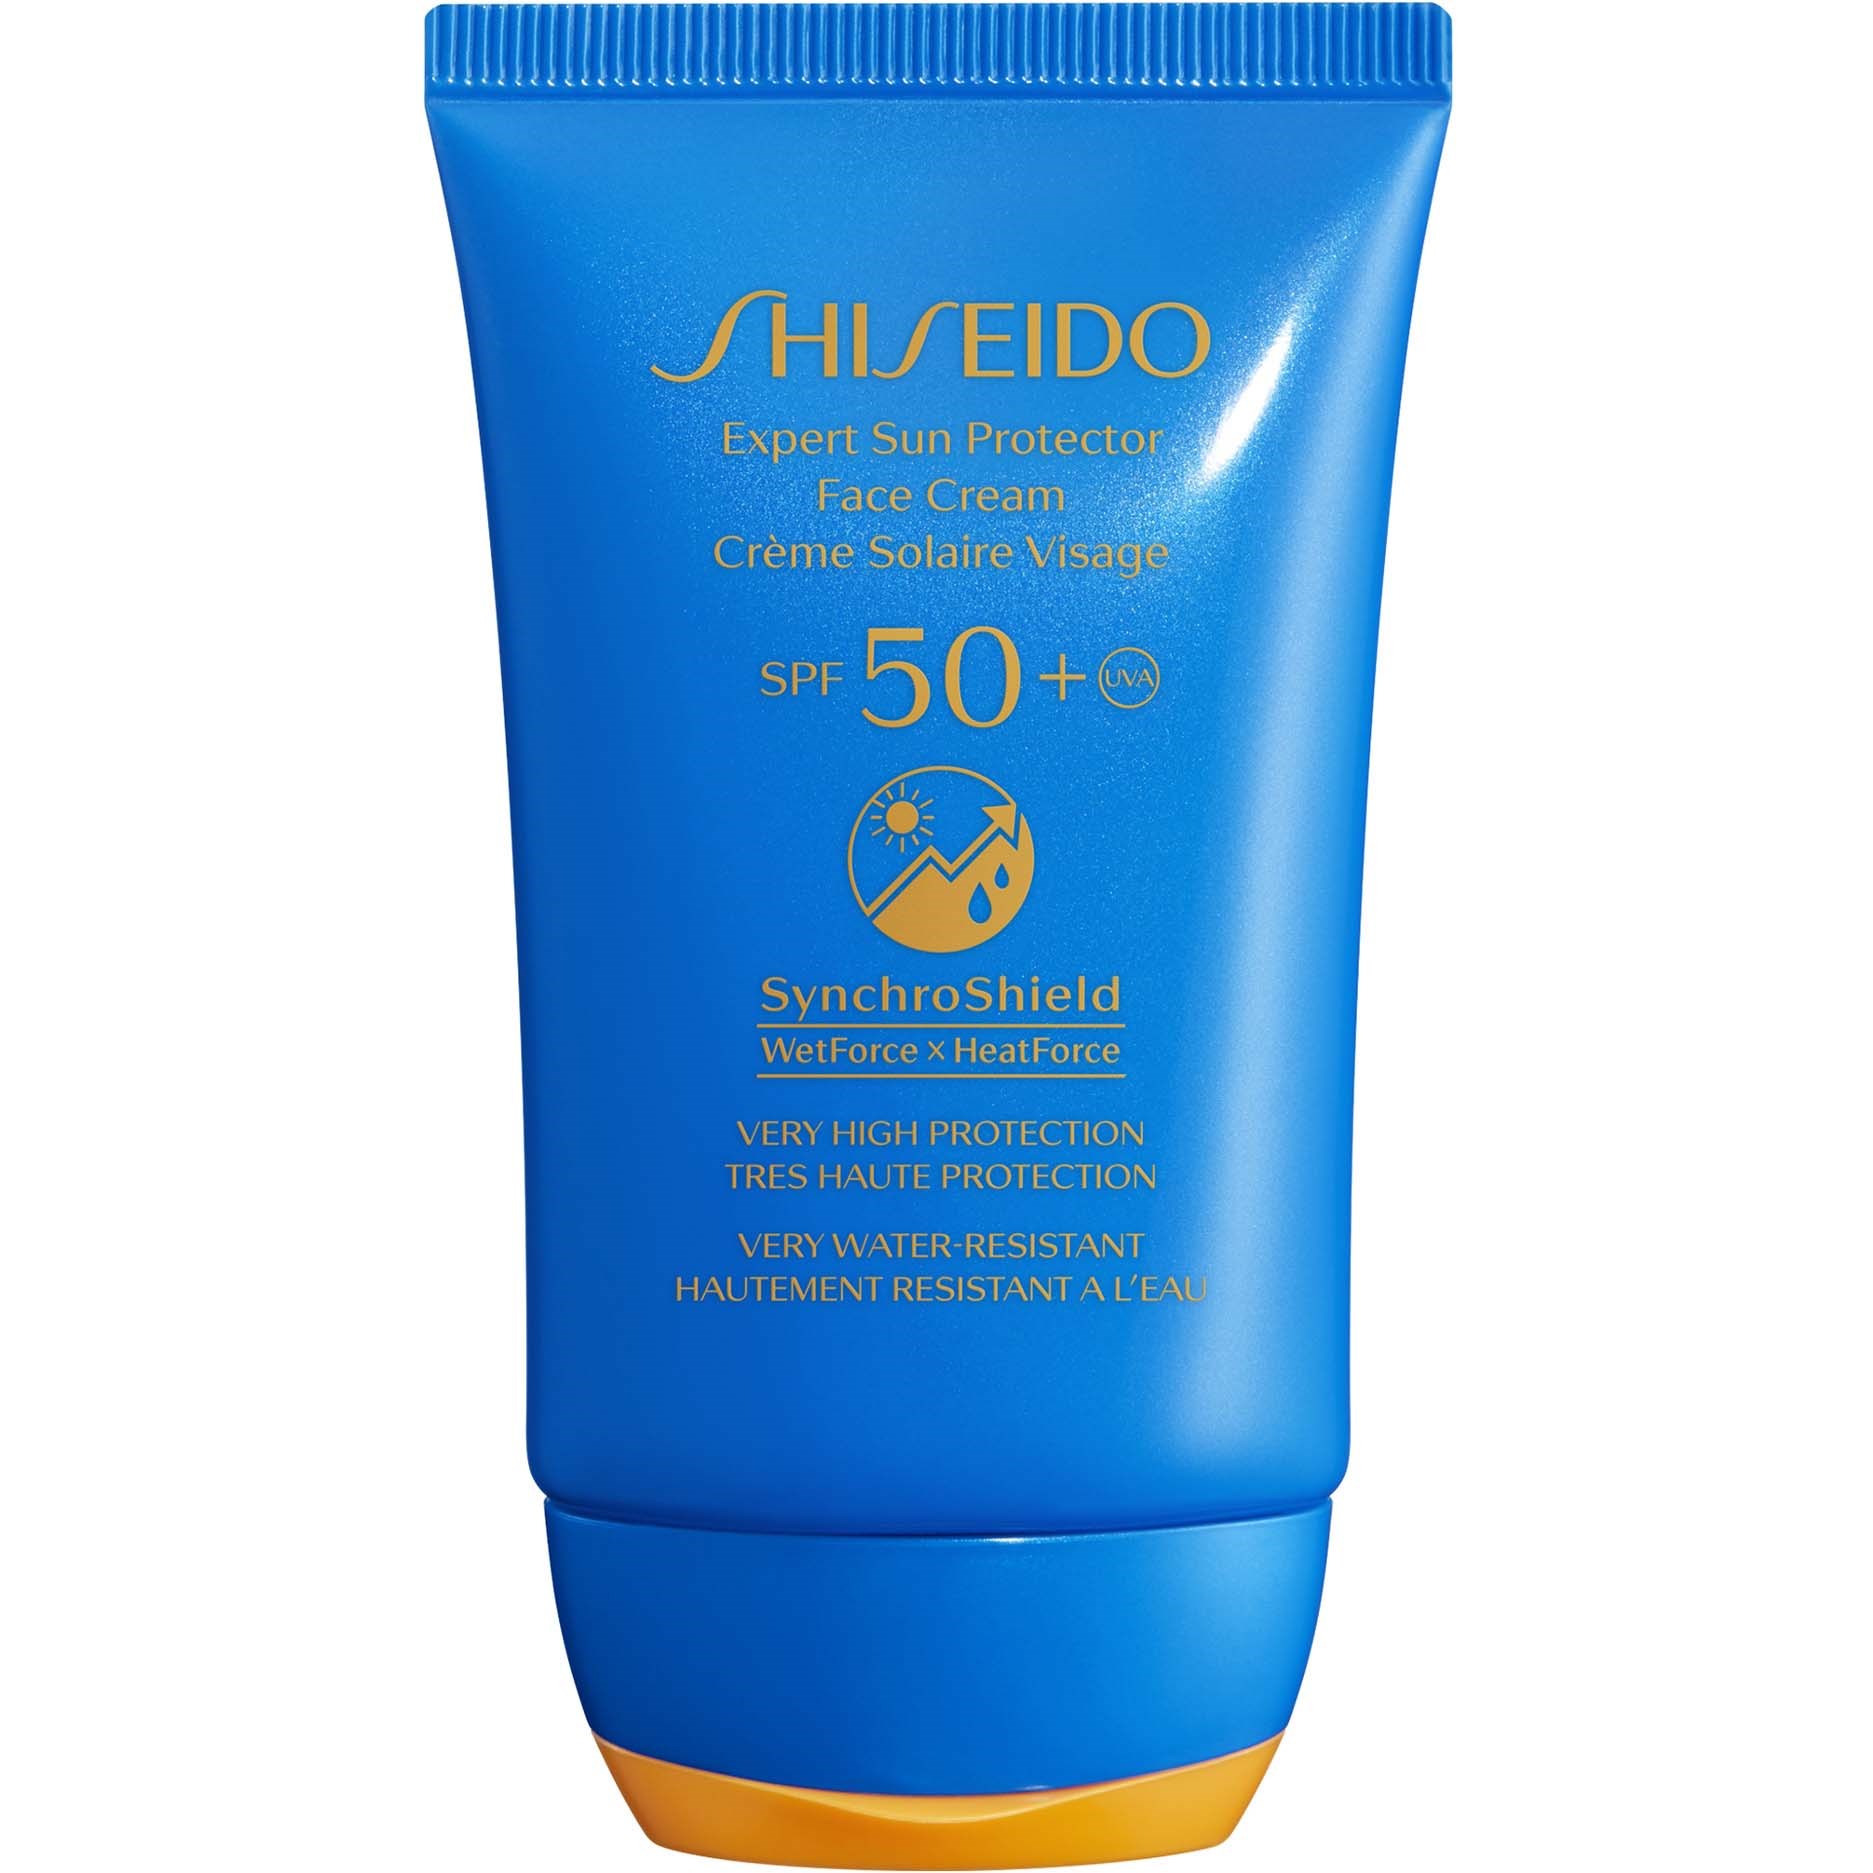 Shiseido Expert Sun Protector Face Cream Age Defense SPF 50+